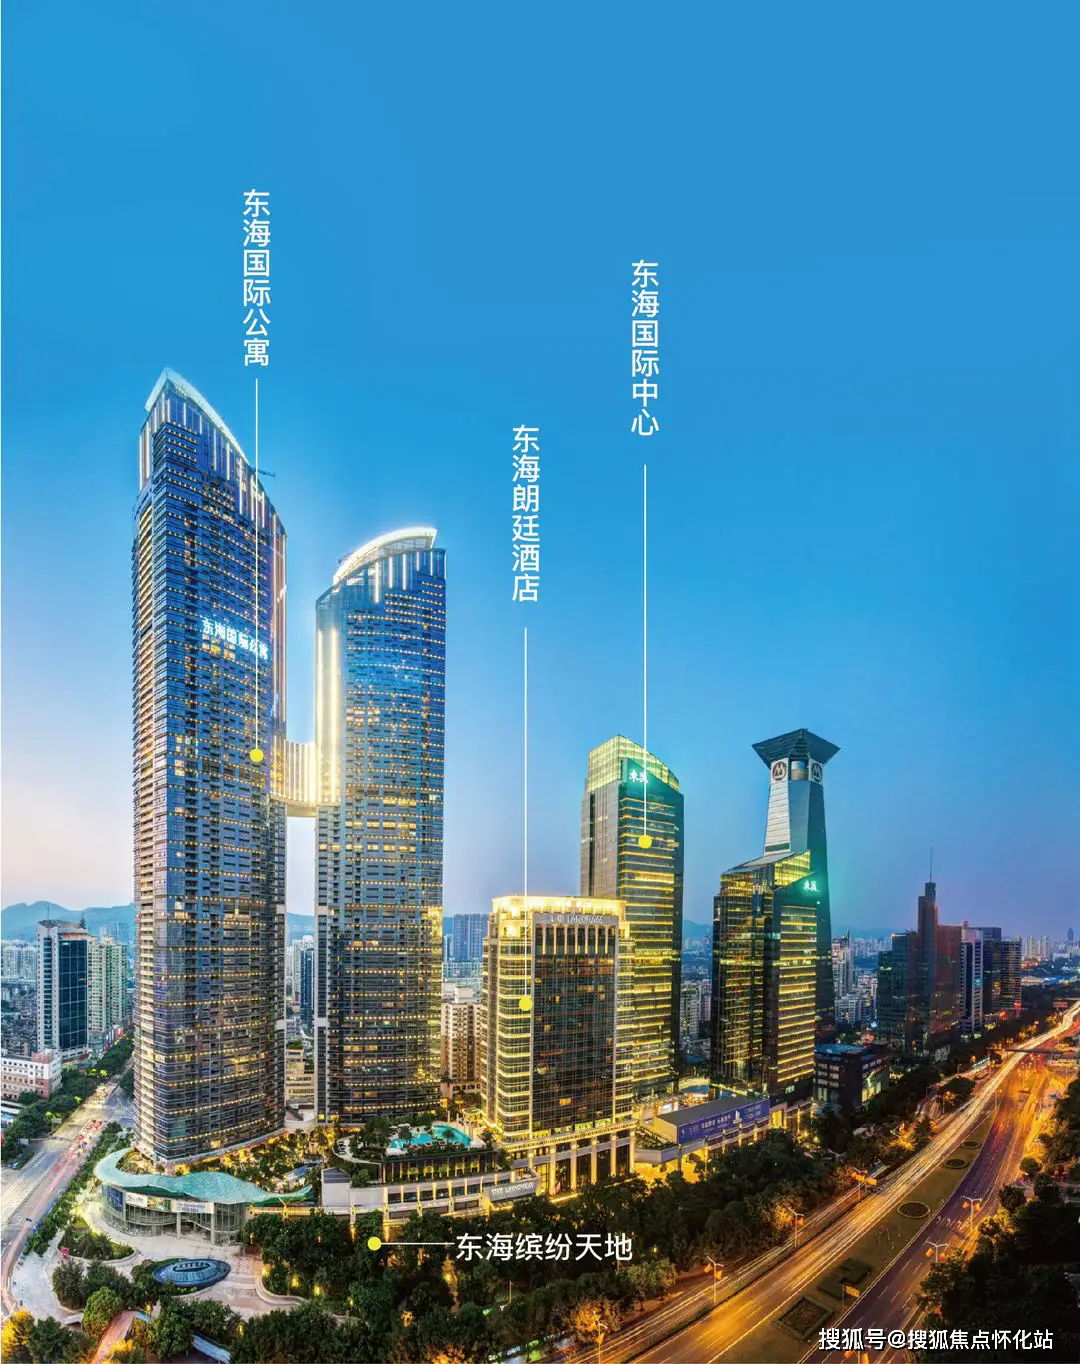 北京某金融公司CEO陈女士买东海国际公寓复式产品